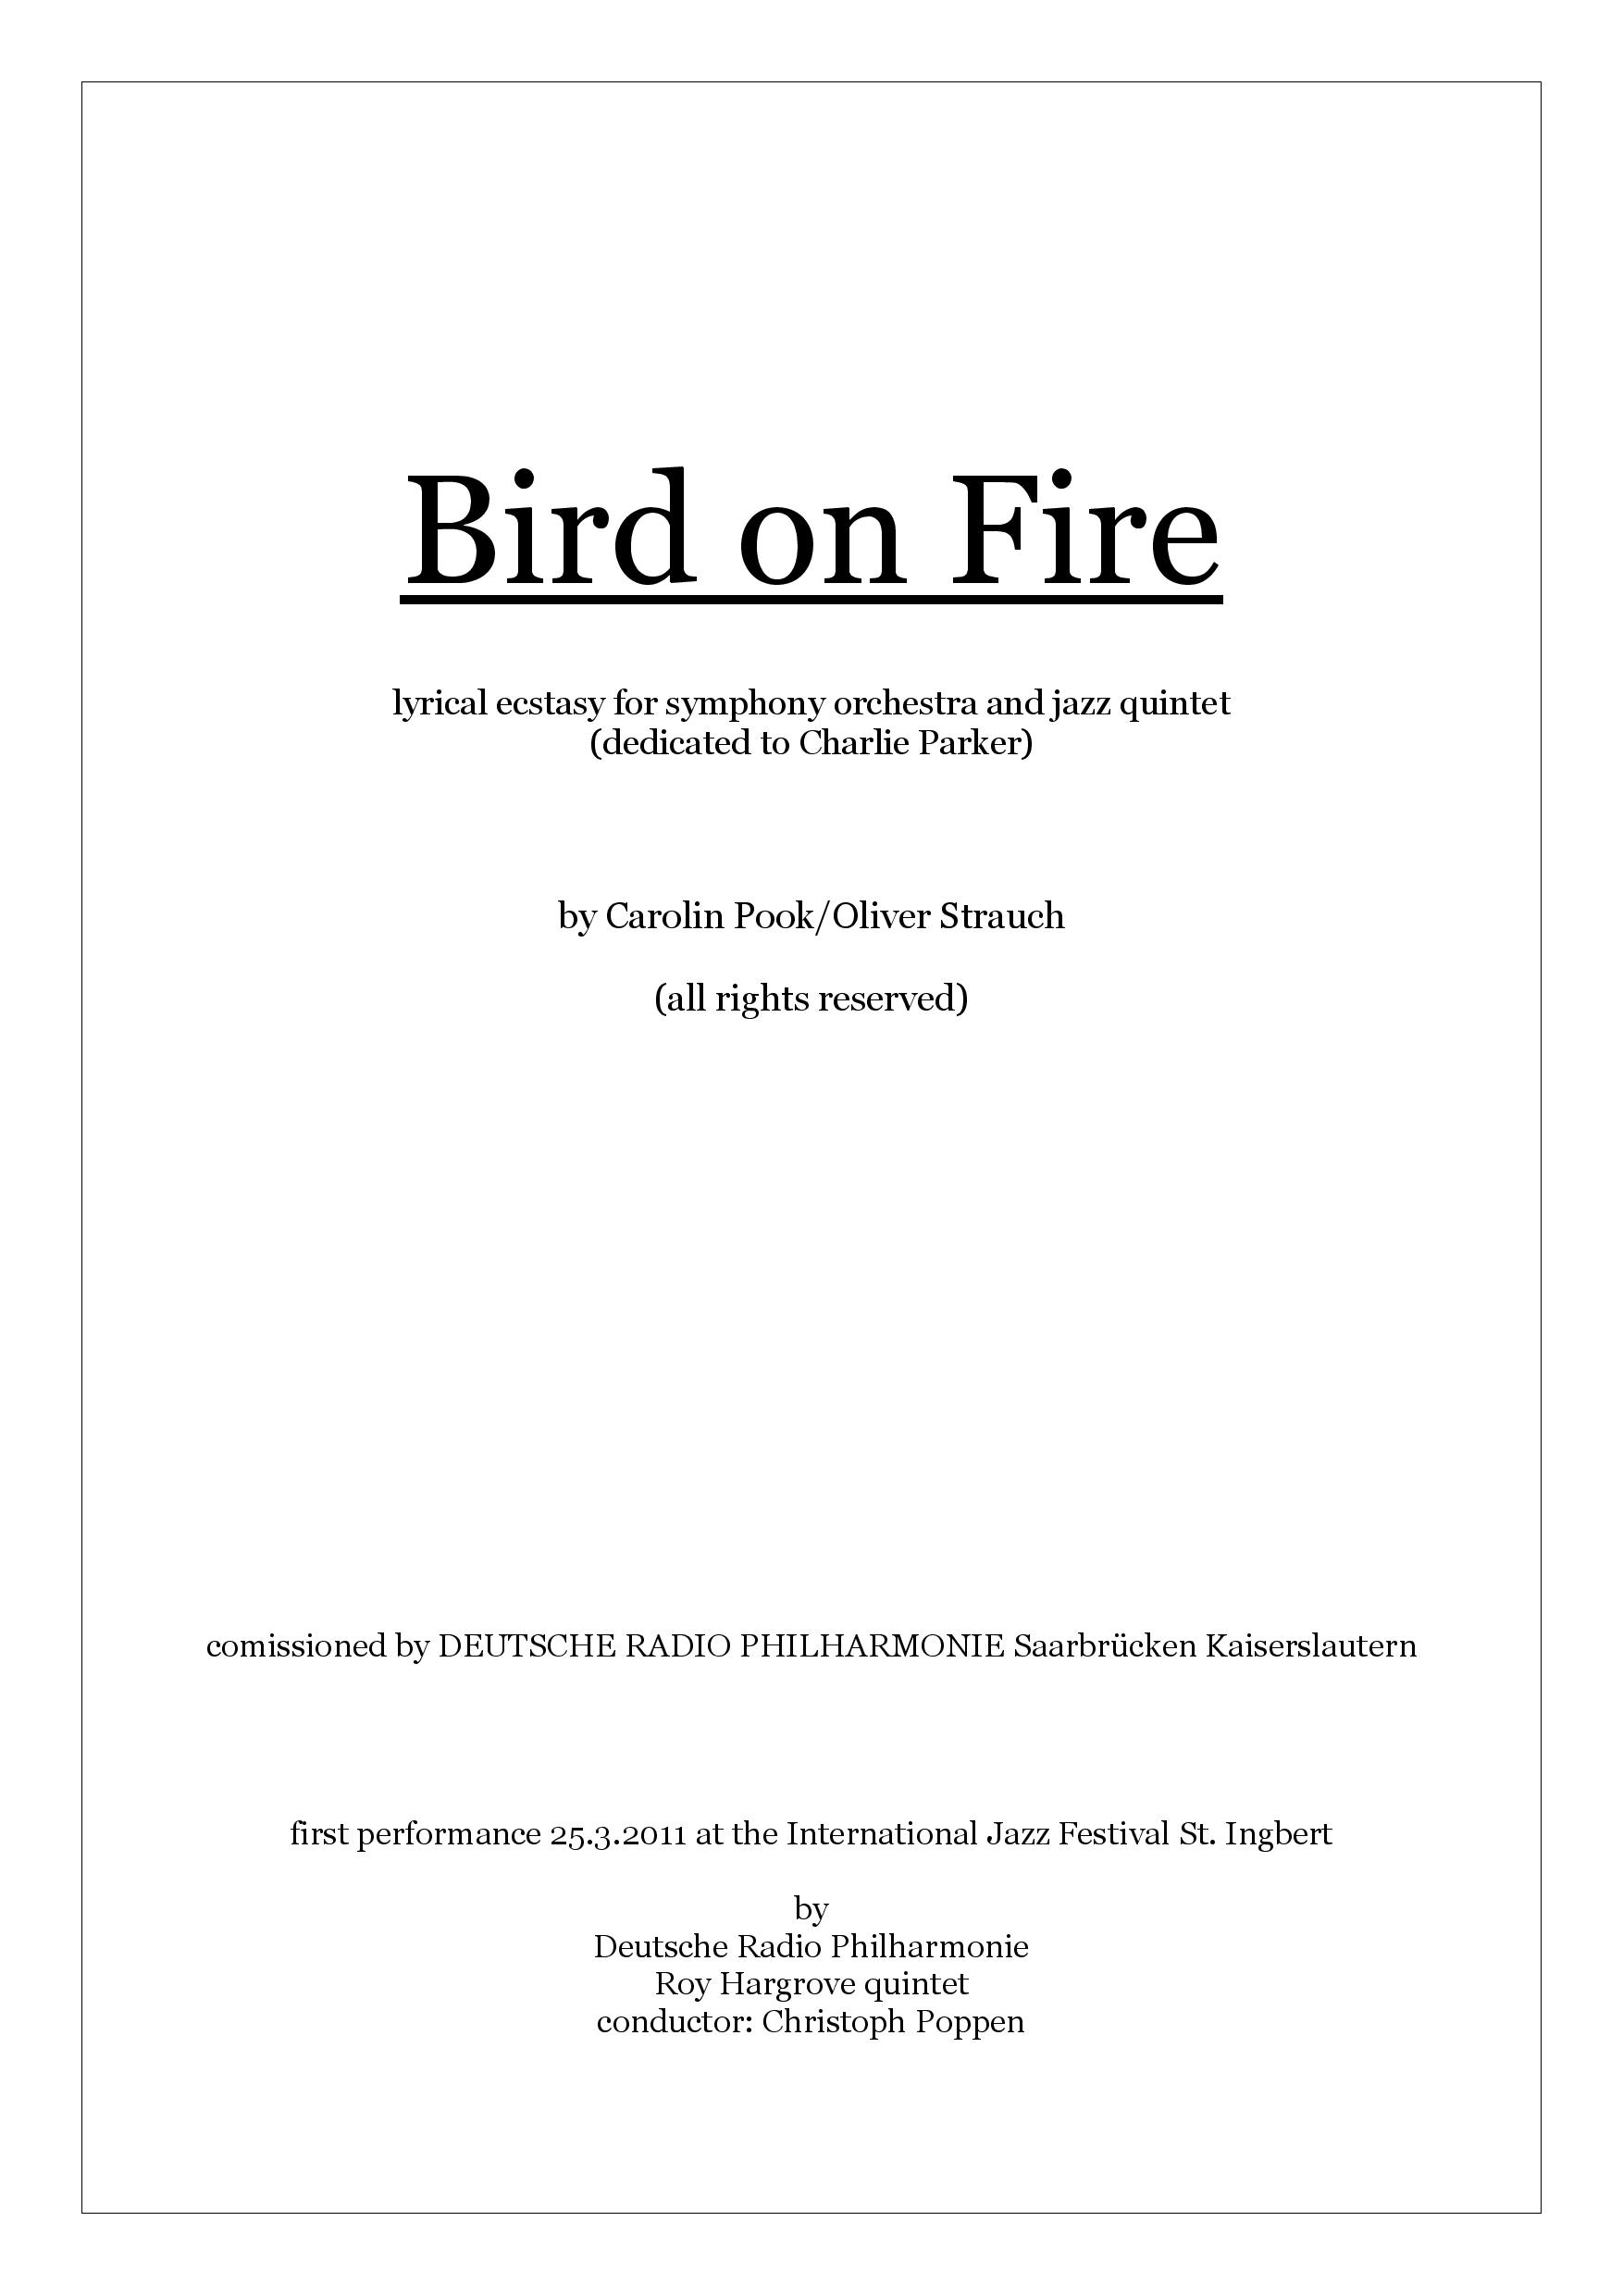 Bird on Fire - score-page-001.jpg